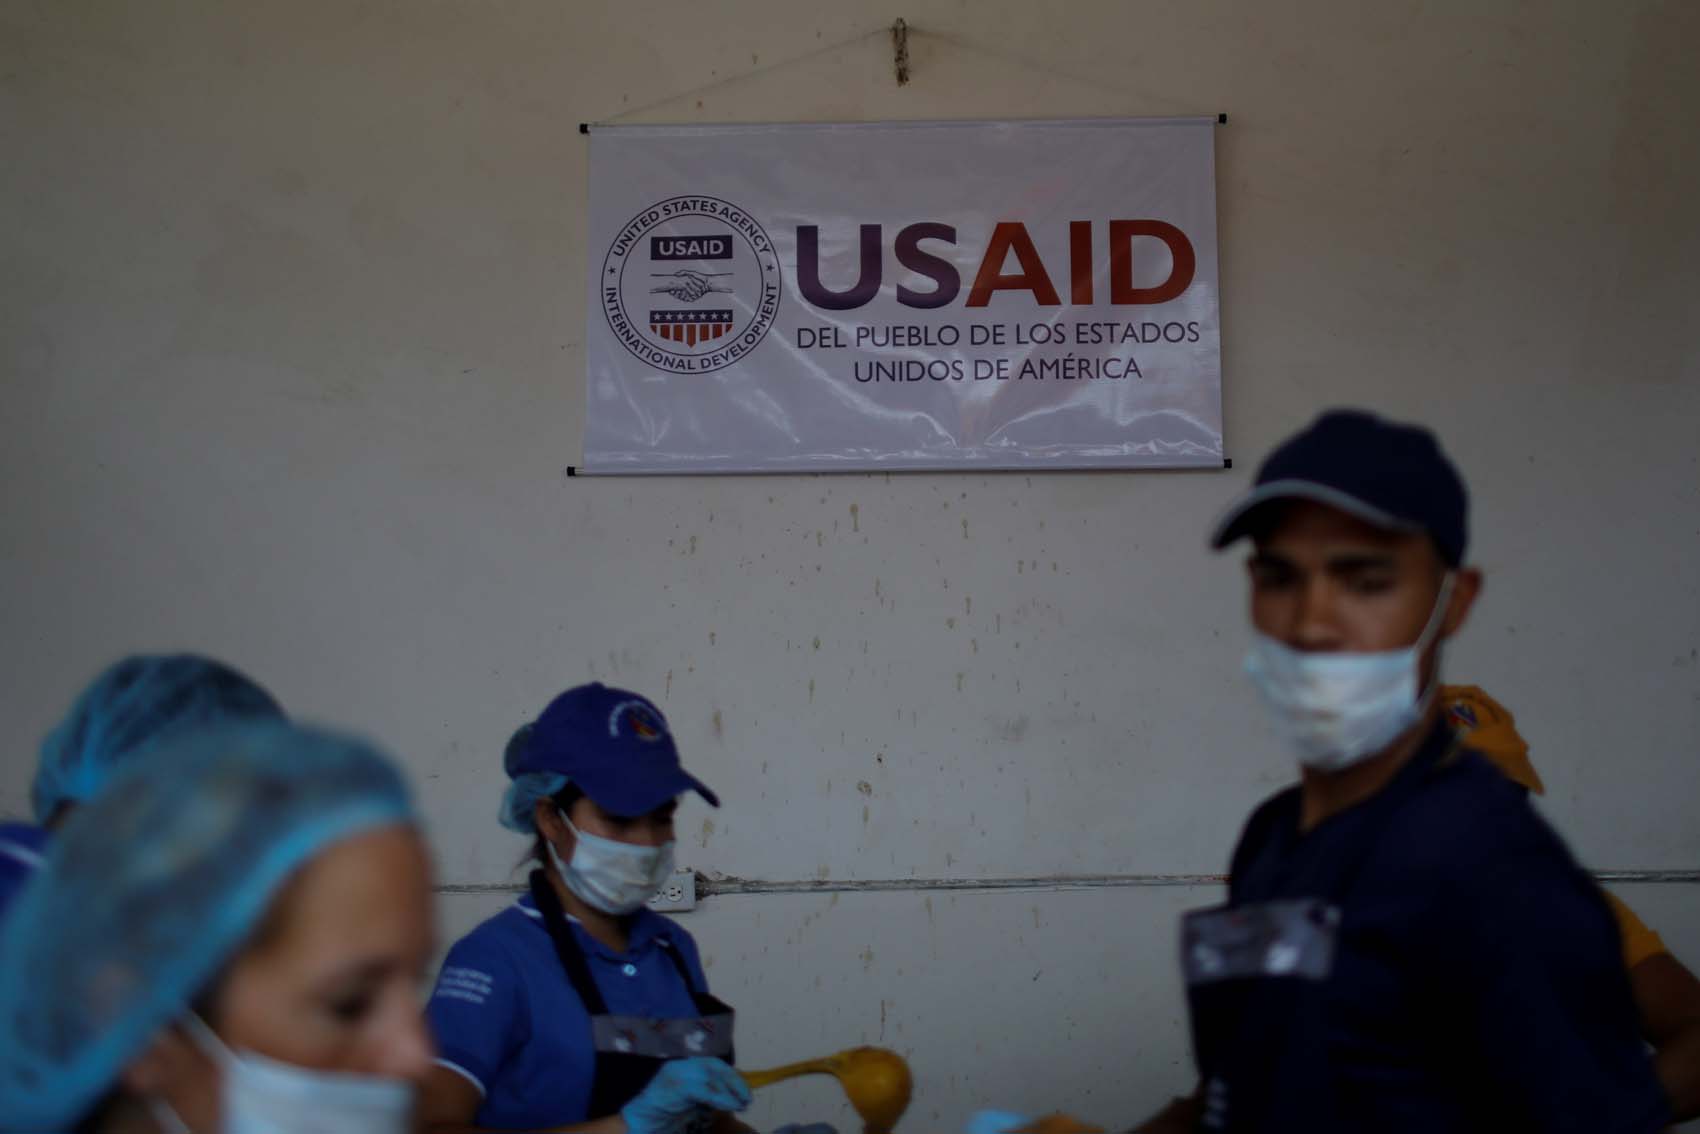 Usaid desmontó la campaña sobre supuesta corrupción con la ayuda humanitaria